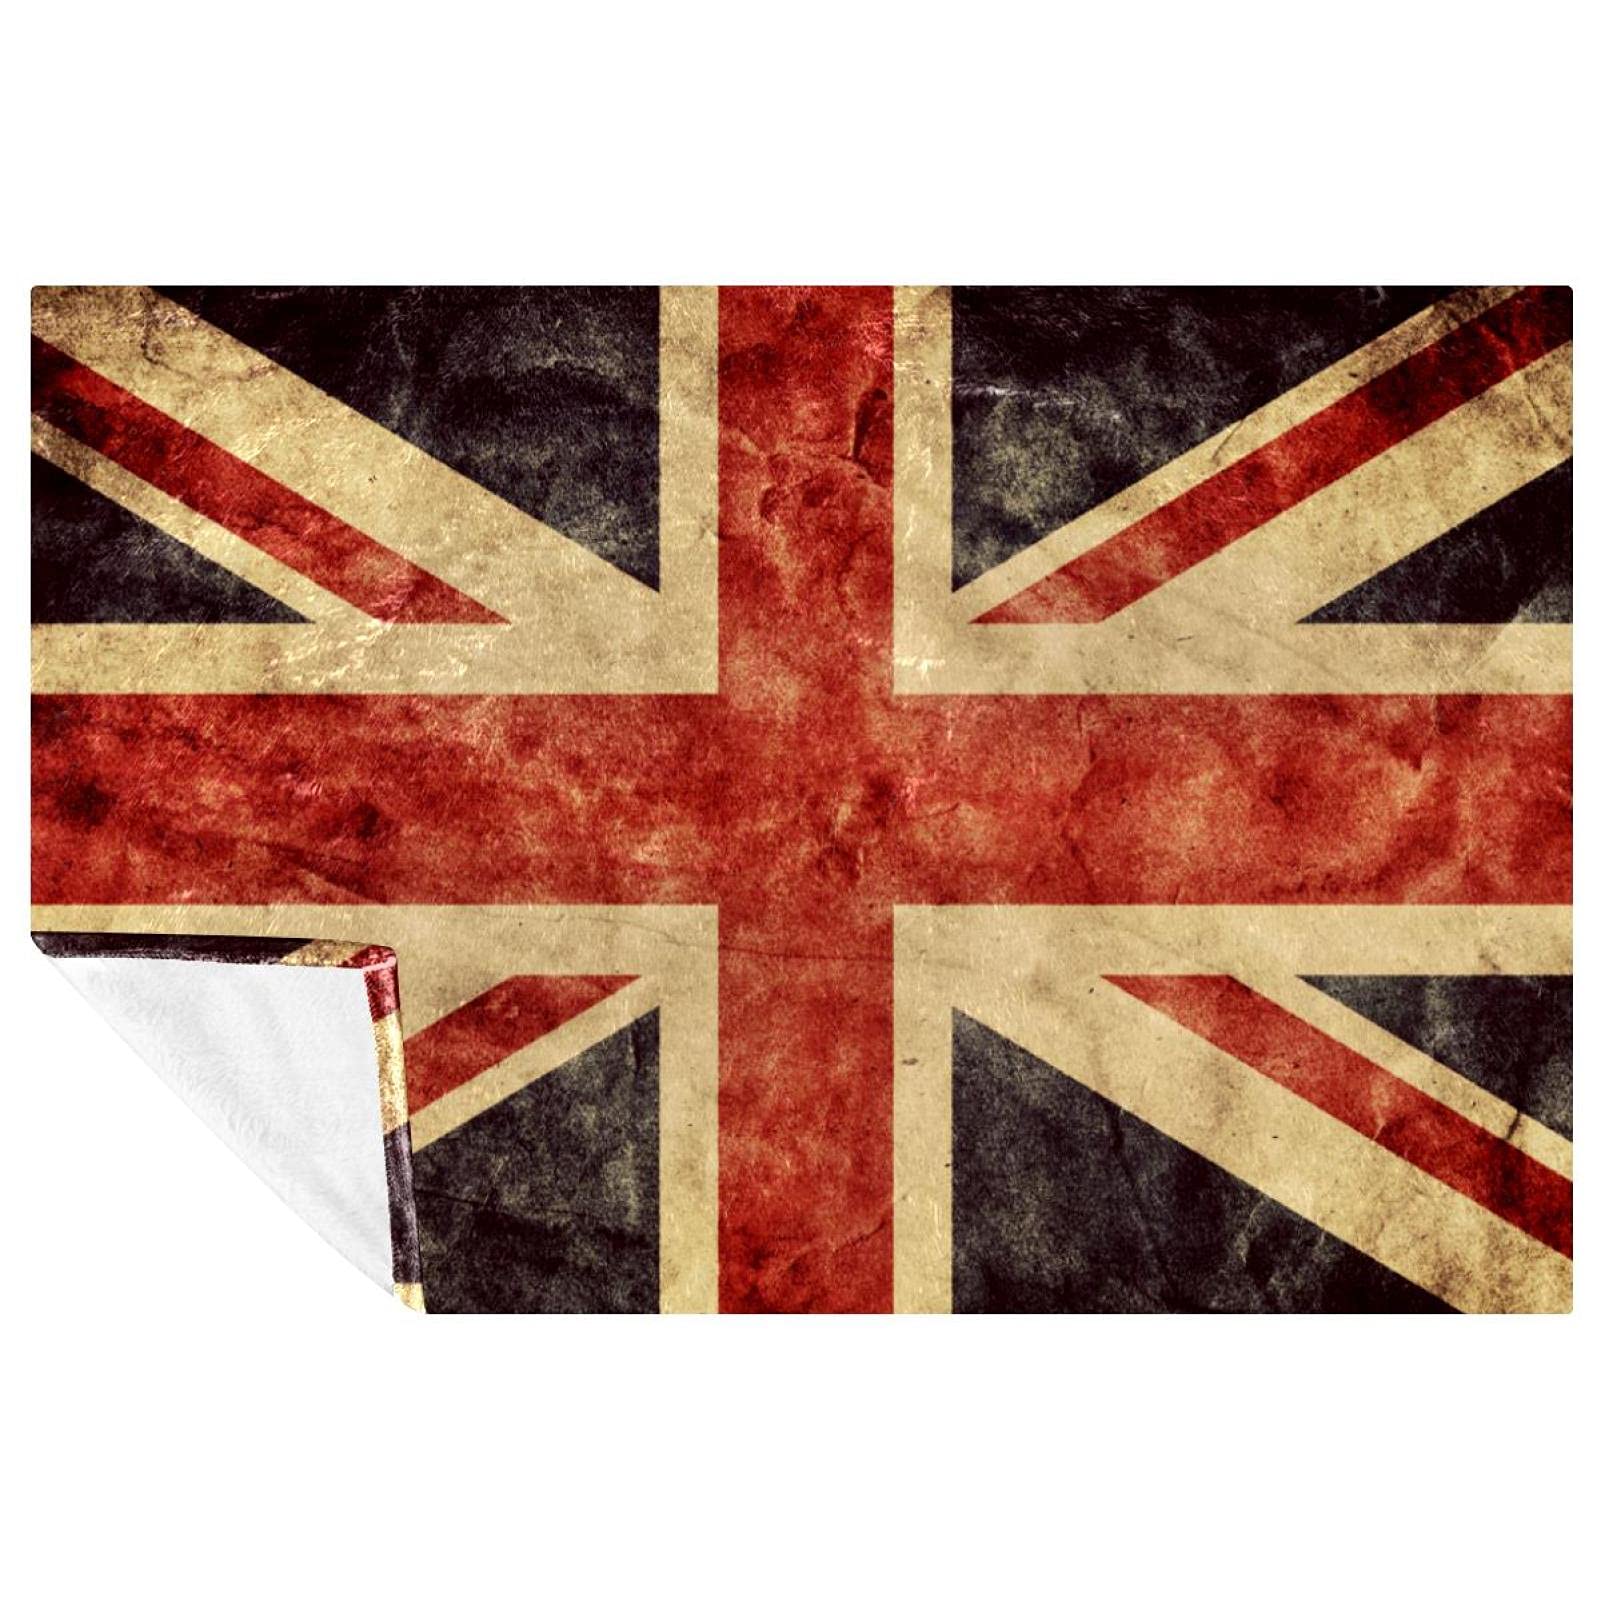 BestIdeas Decke mit britischer Flagge im Vintage-Stil, weich, warm, gemütlich, Überwurf für Bett, Couch, Sofa, Picknick, Camping, Strand, 150 x 200 cm